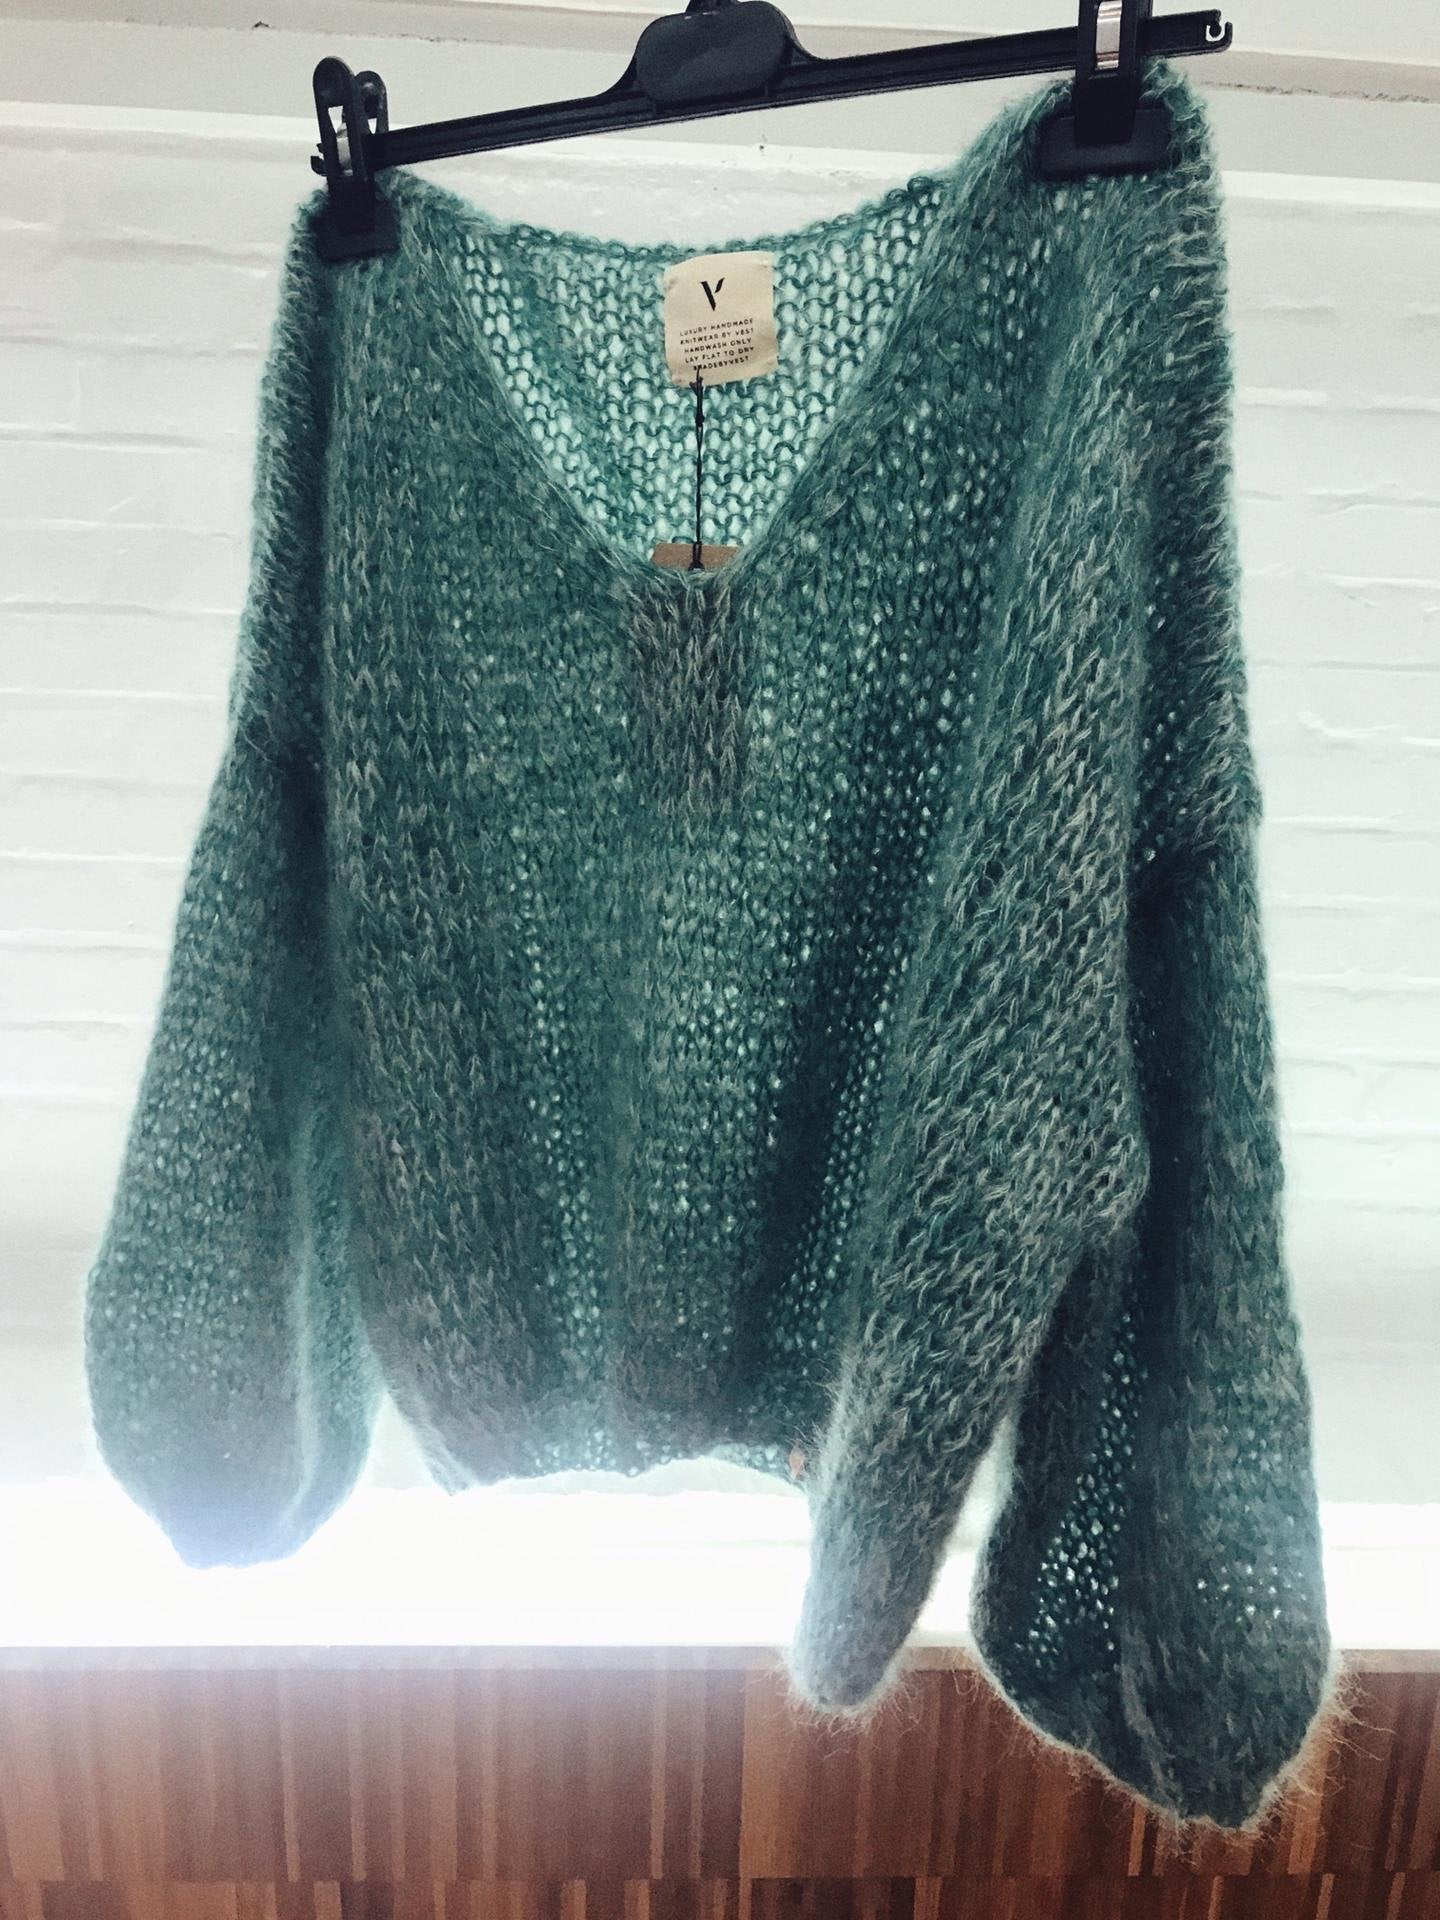 Made By Vest luxury handmade green knitwear